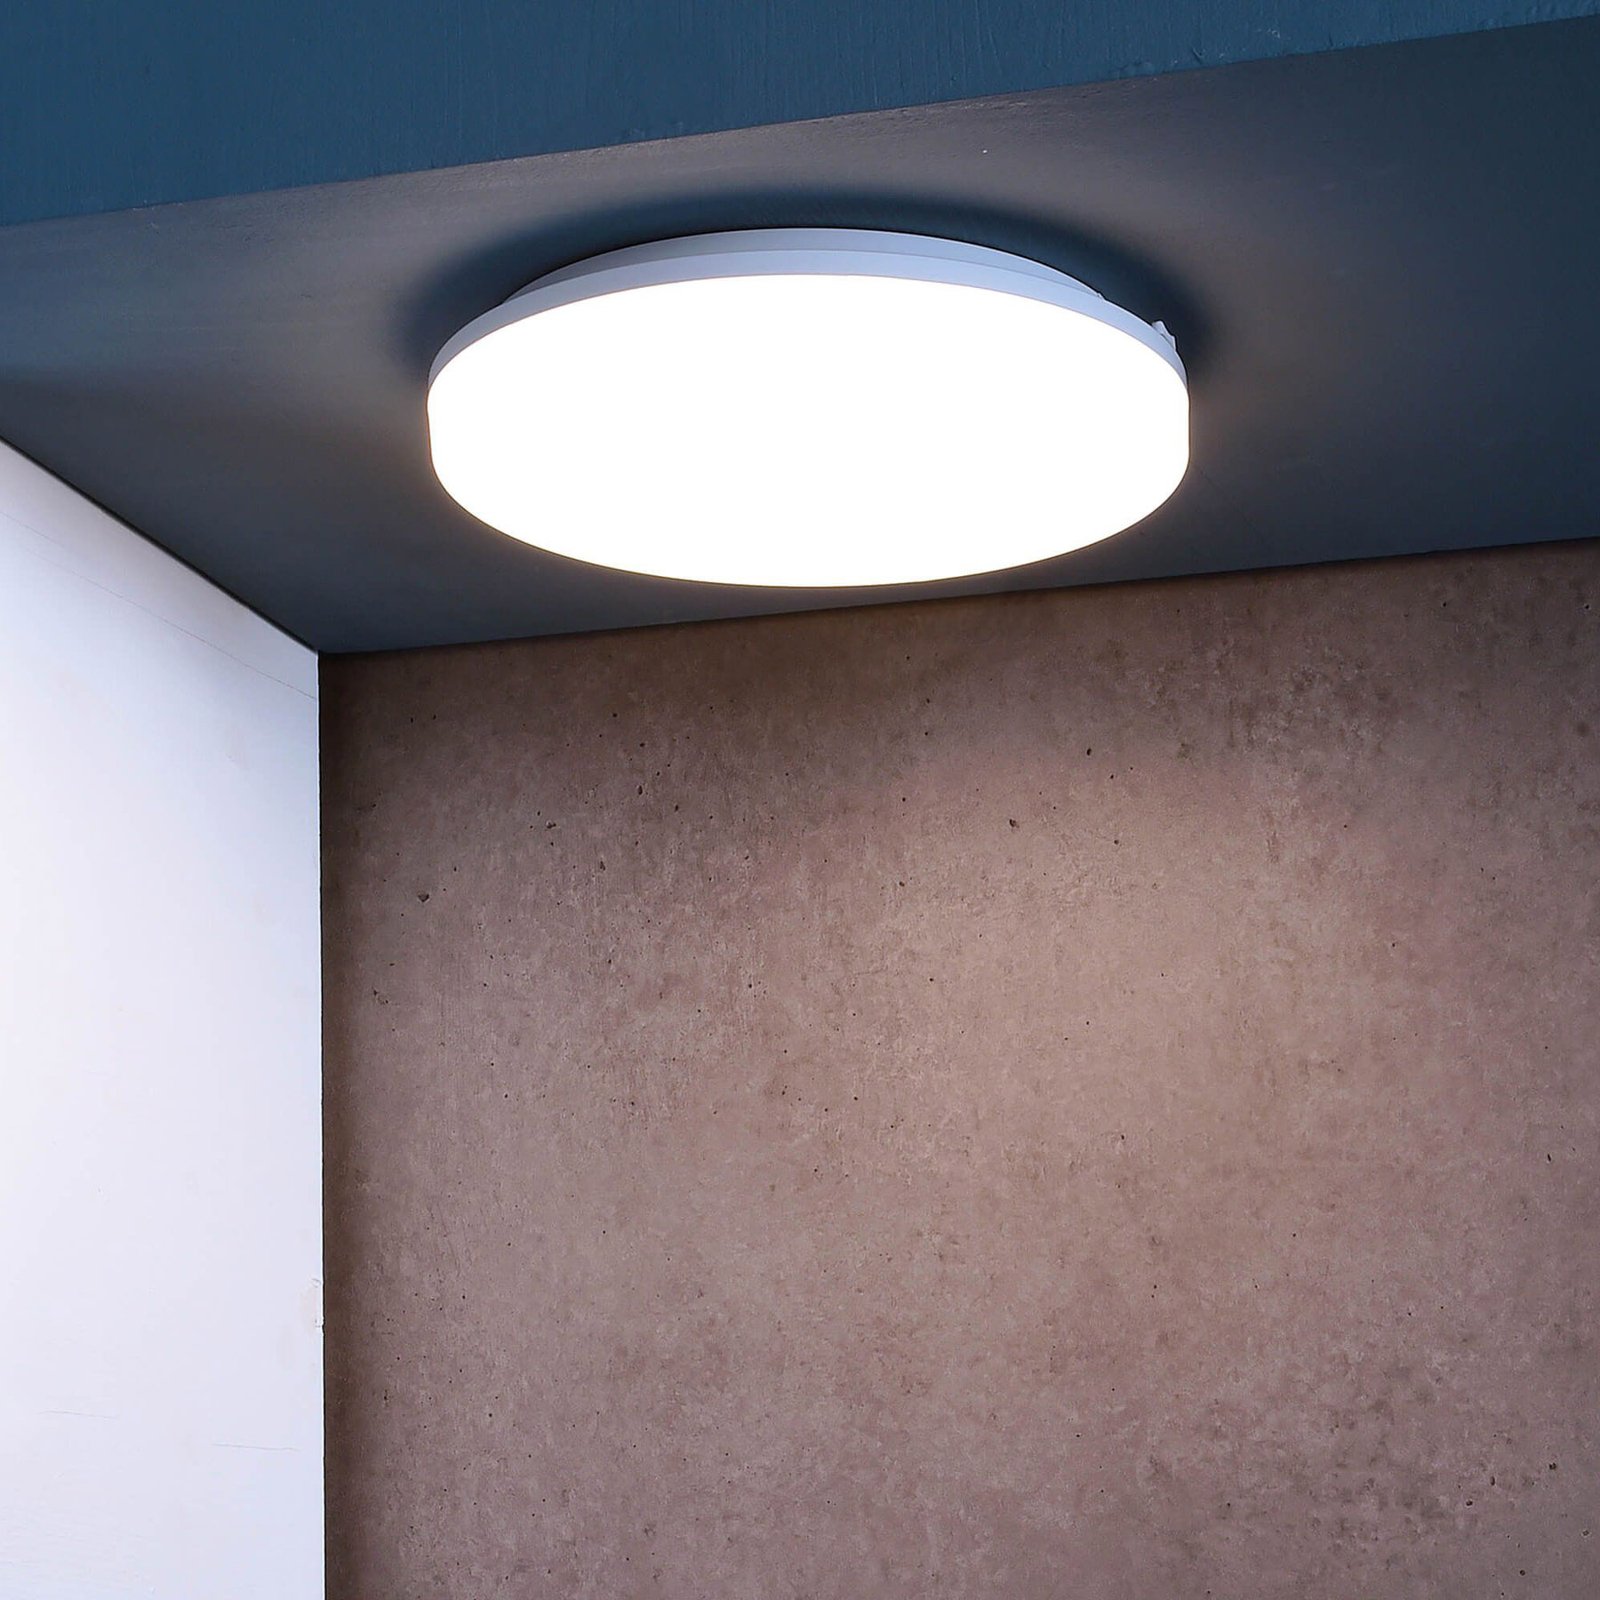 Altais LED ceiling light IP54 Ø 33 cm